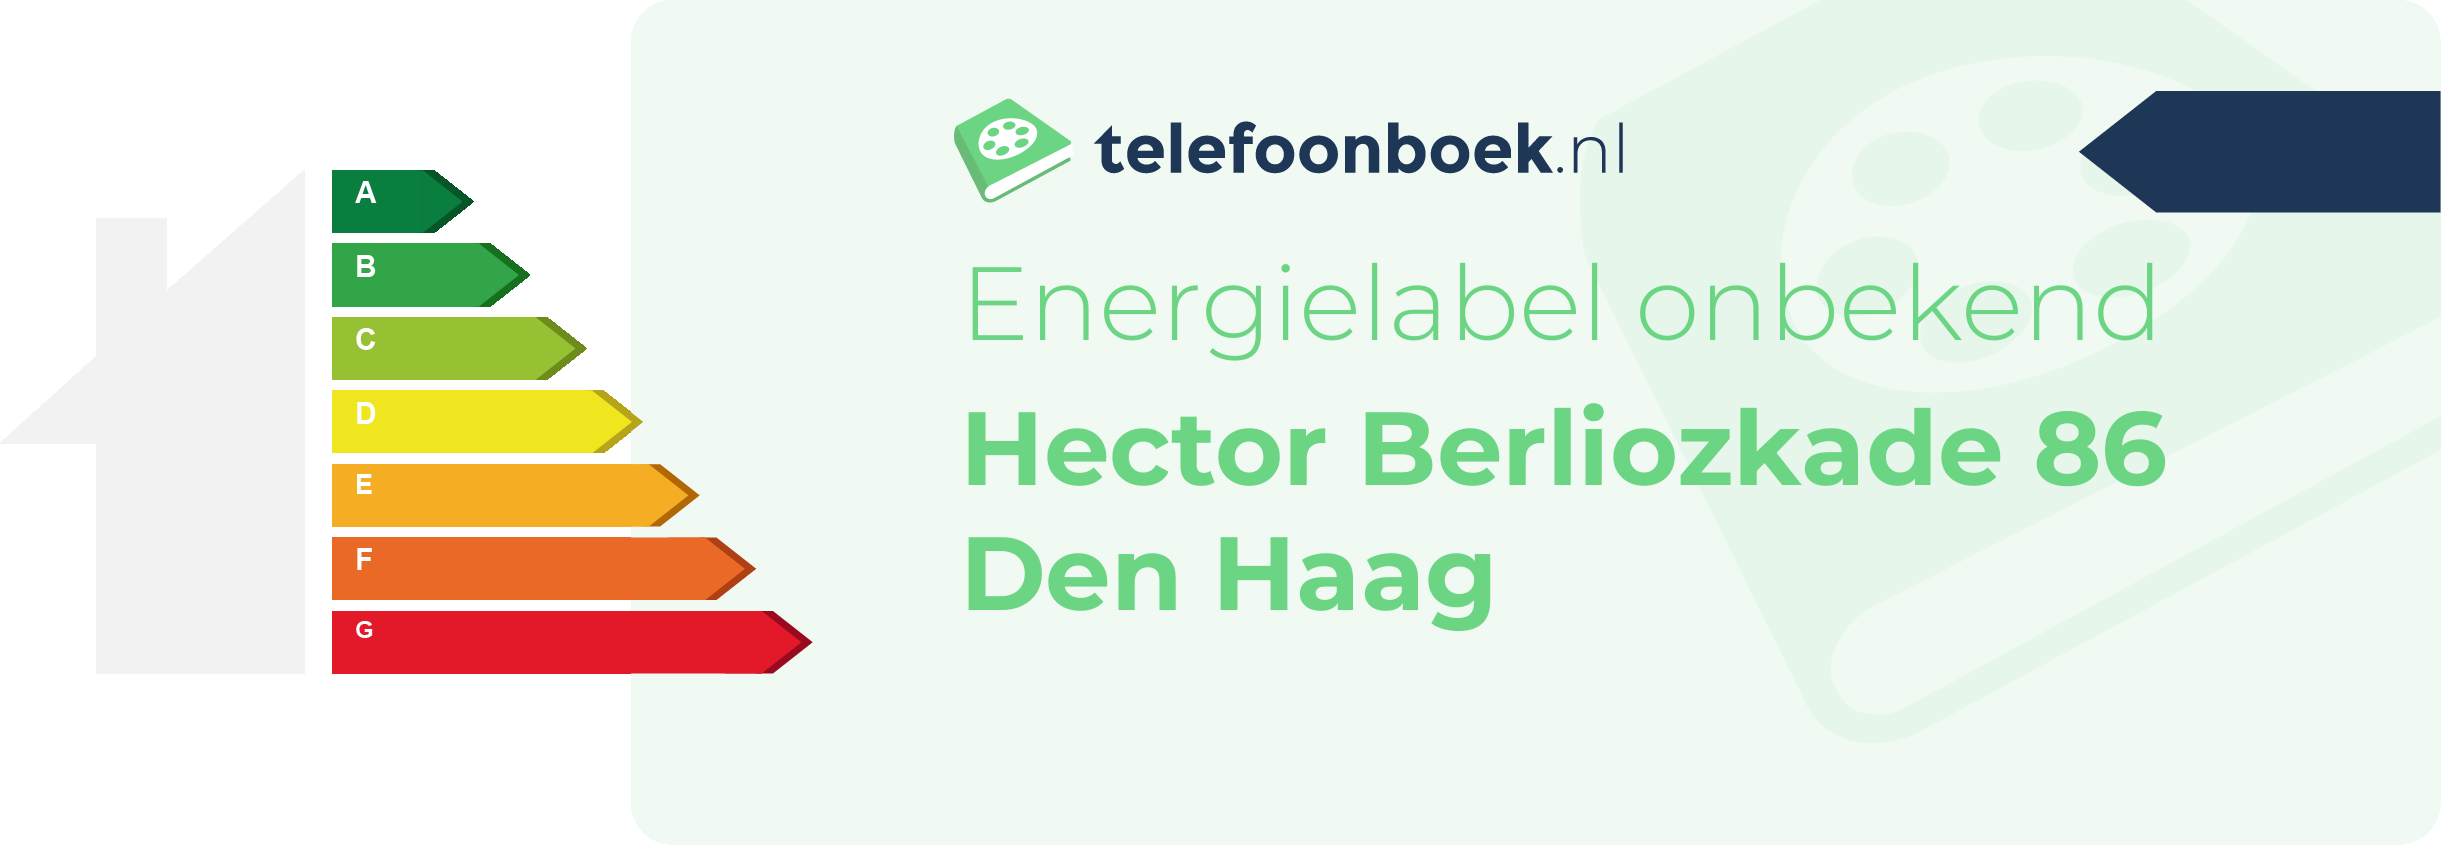 Energielabel Hector Berliozkade 86 Den Haag